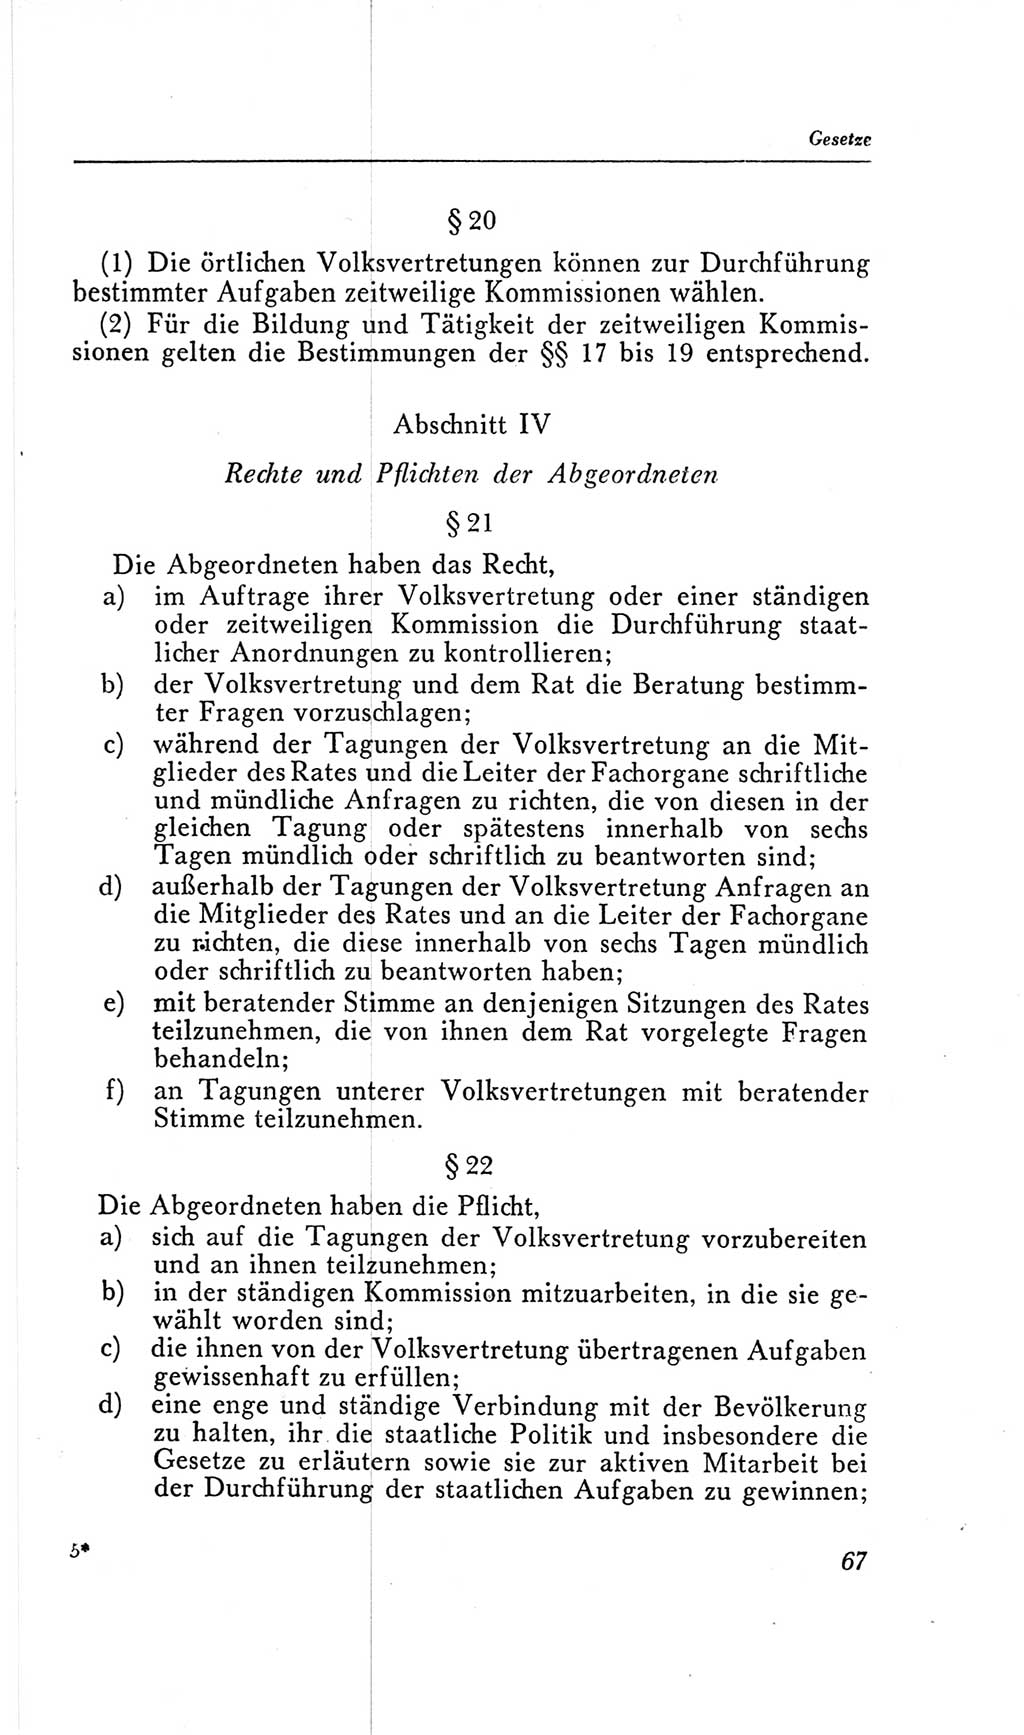 Handbuch der Volkskammer (VK) der Deutschen Demokratischen Republik (DDR), 2. Wahlperiode 1954-1958, Seite 67 (Hdb. VK. DDR, 2. WP. 1954-1958, S. 67)